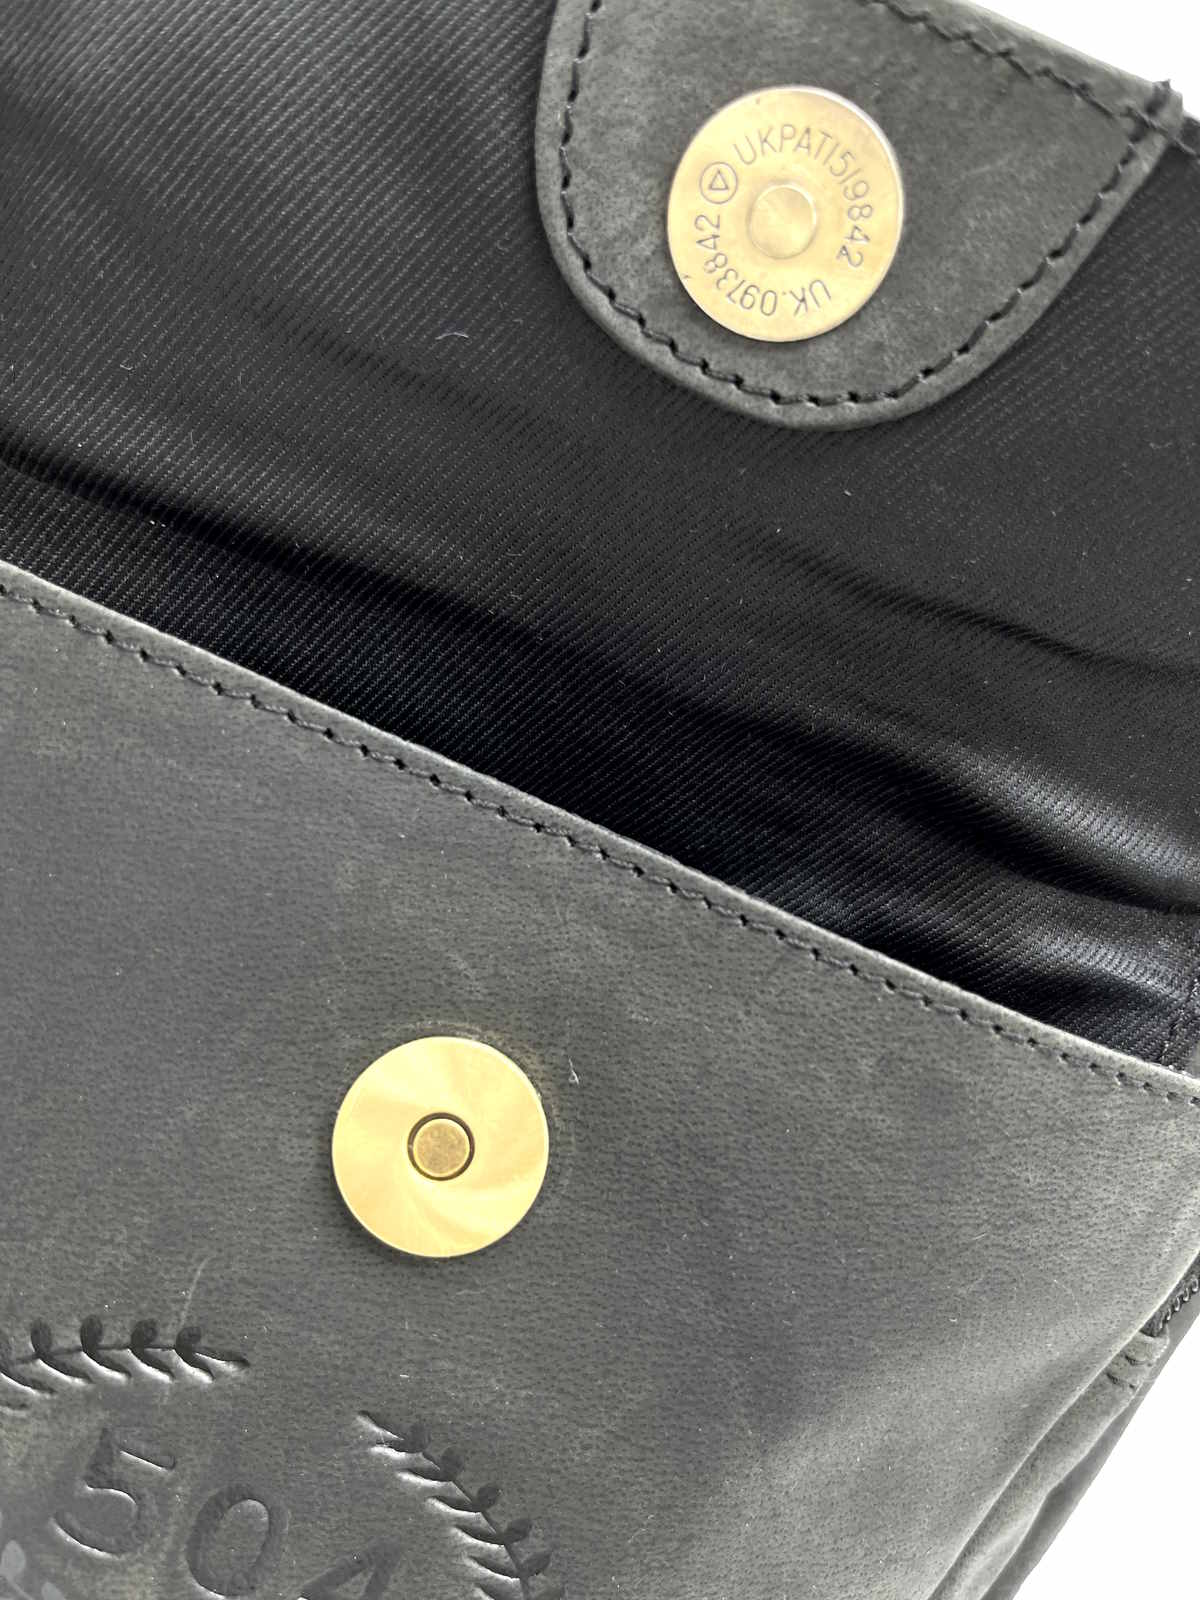 Brand WAMPUM, Genuine Leather Messenger Bag, art. BAG221.425